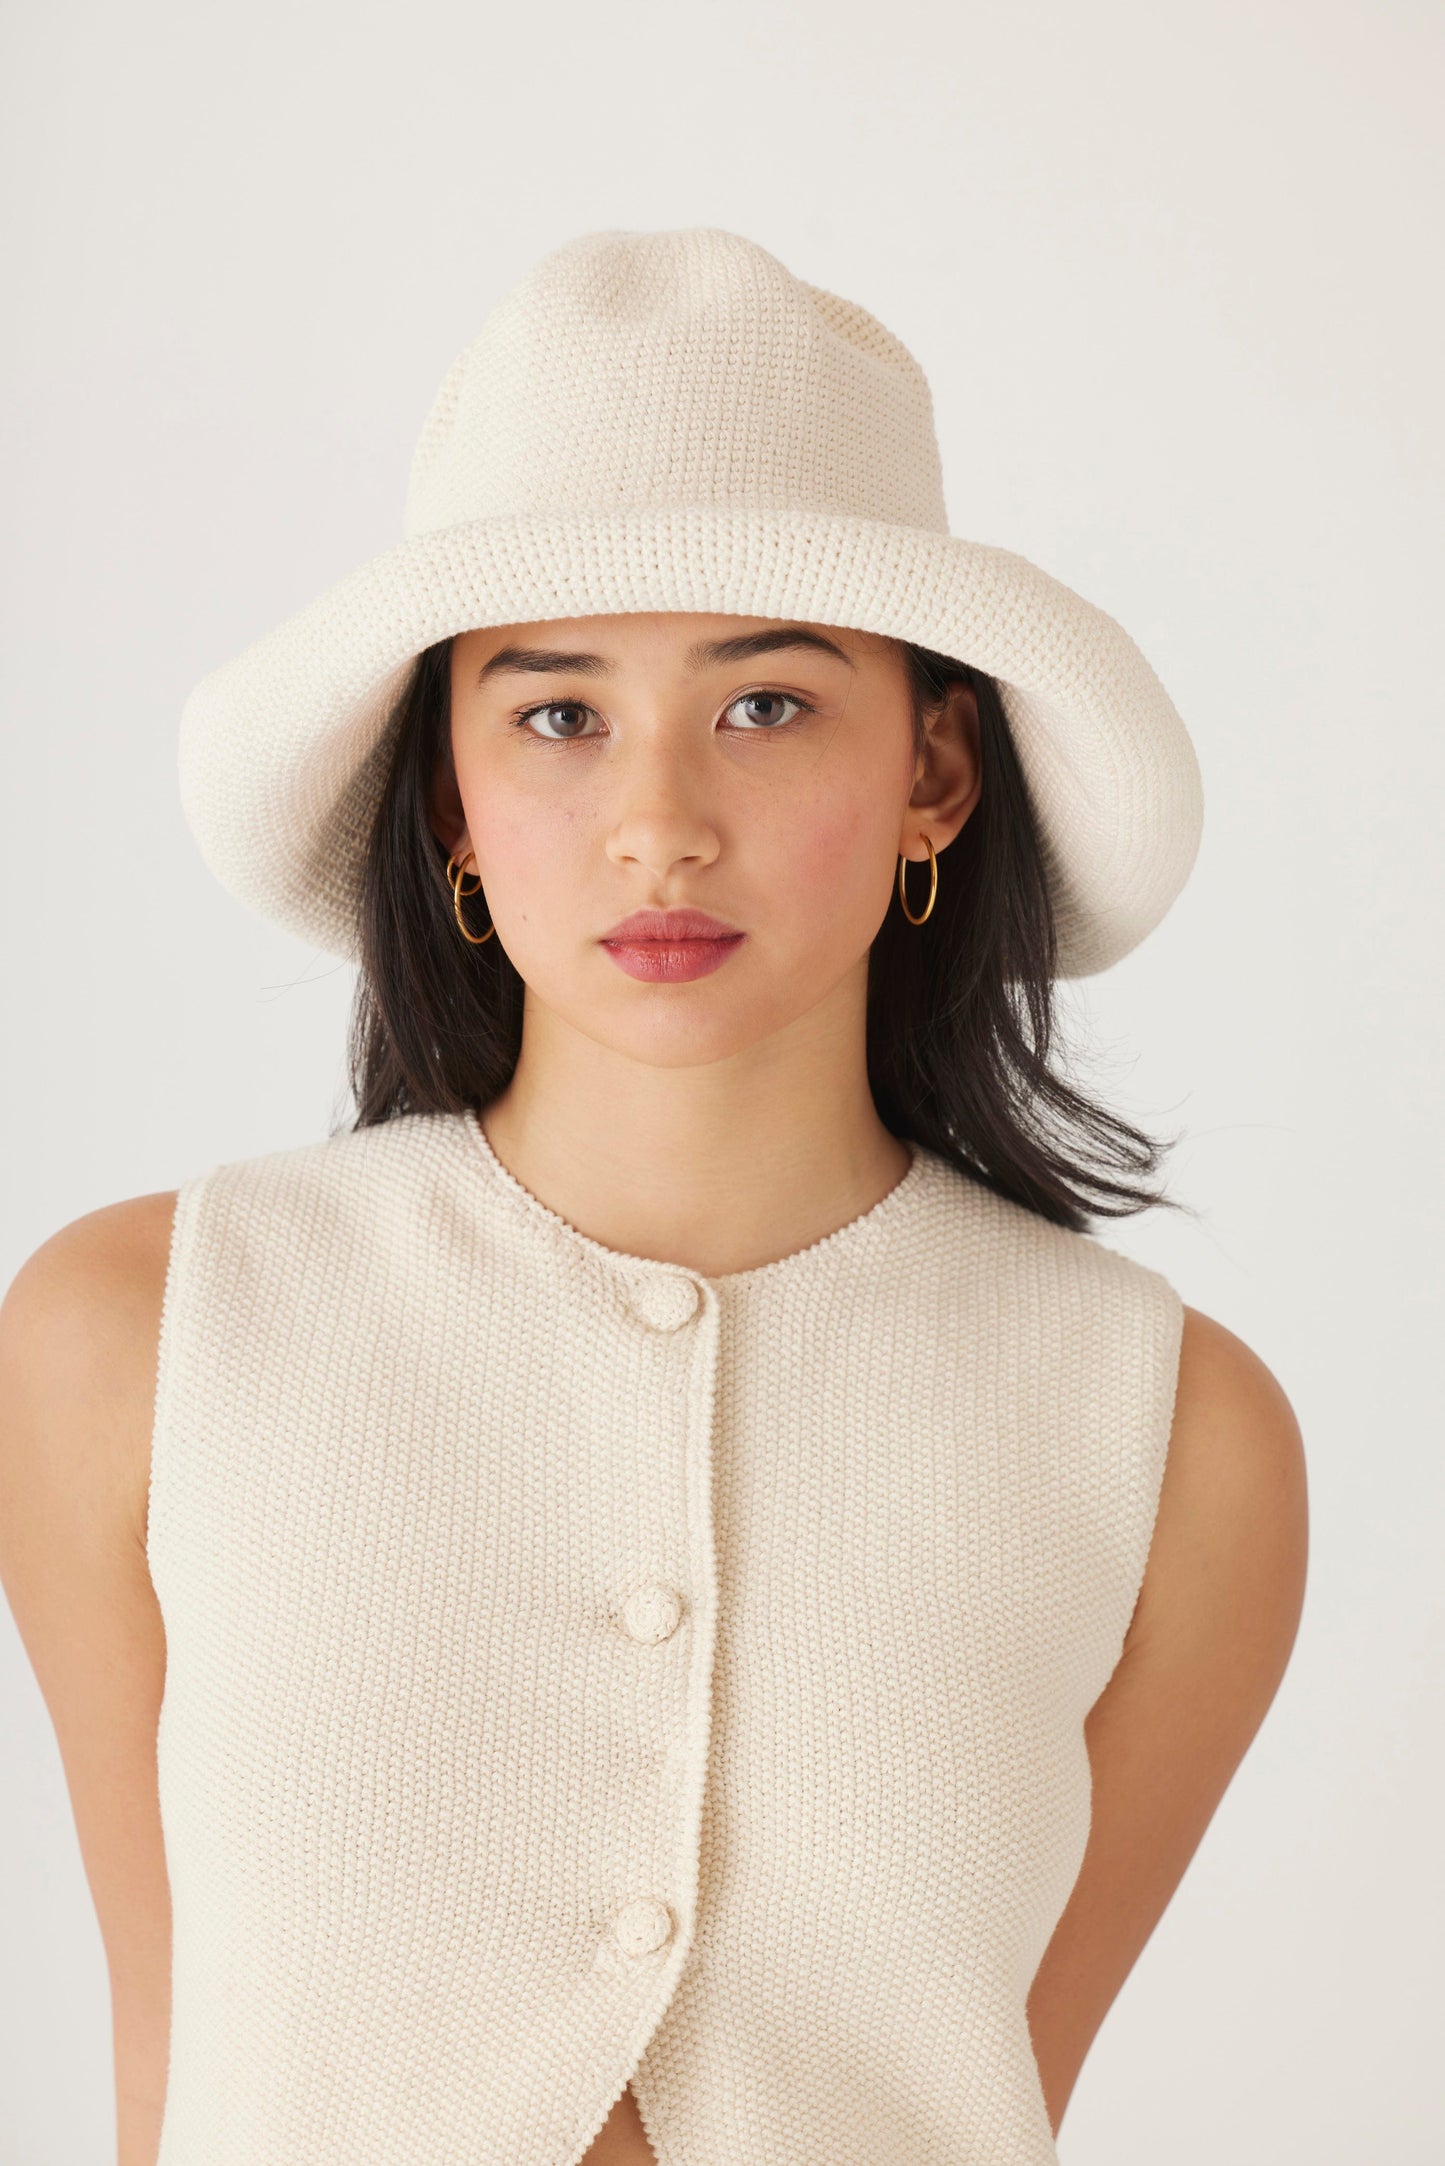 Crochet Sun Hat in Pima Cotton Accessories CHRISTINE ALCALAY   